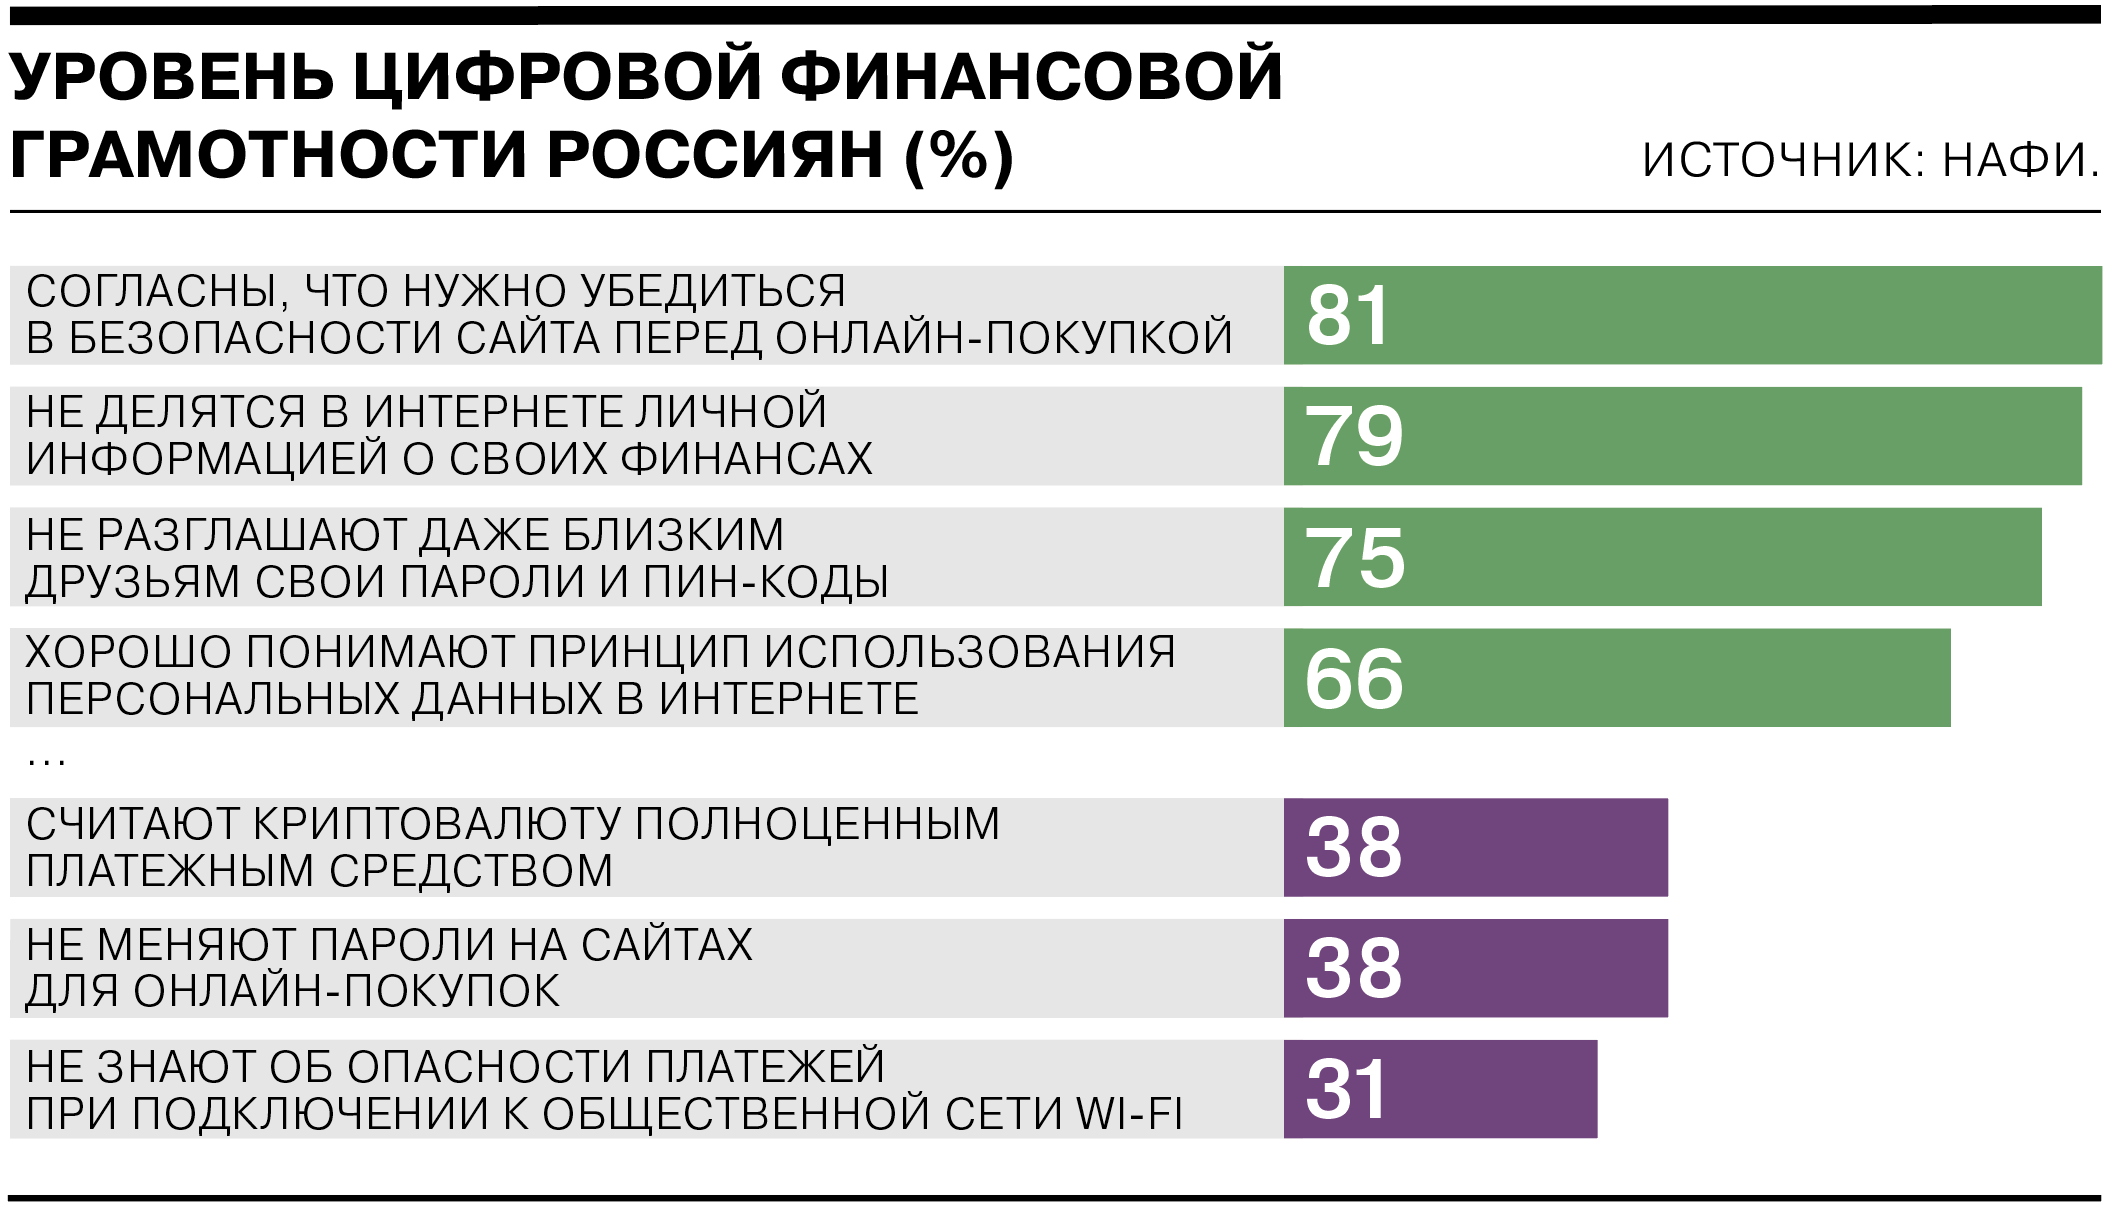 Большинство россиян имеют средний уровень цифровой финансовой грамотности